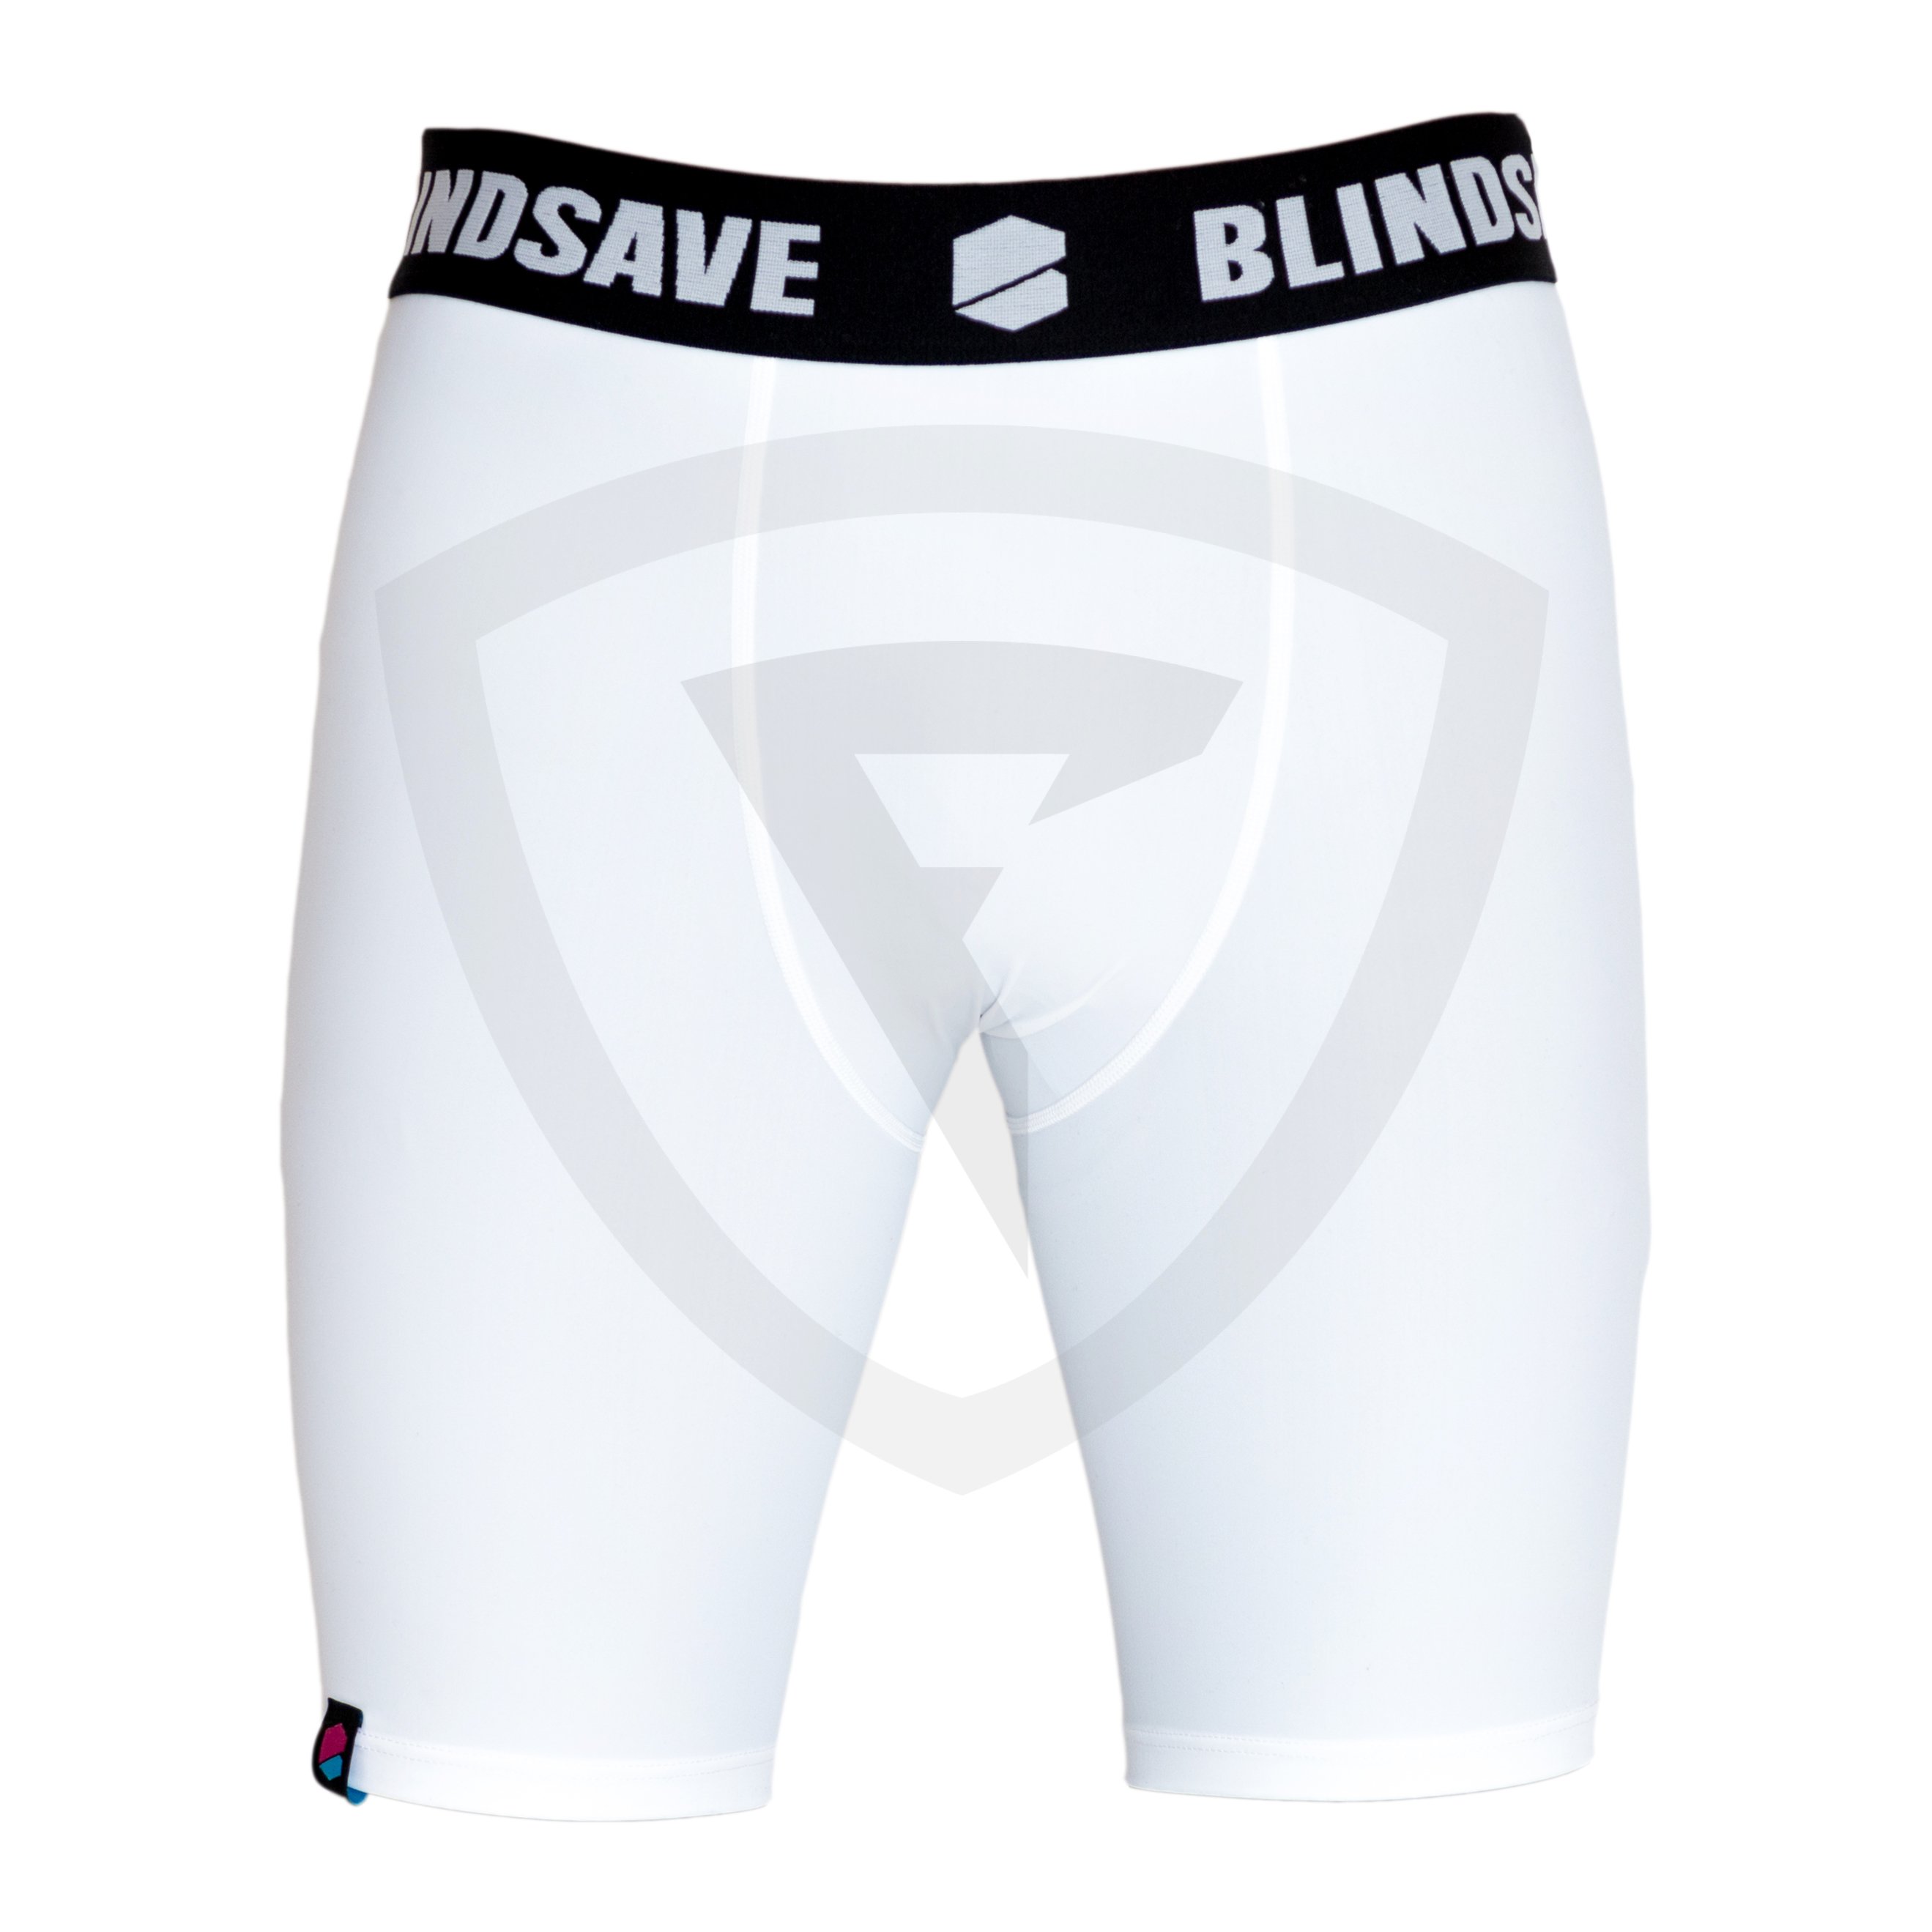 Blindsave Compression Shorts XS černá